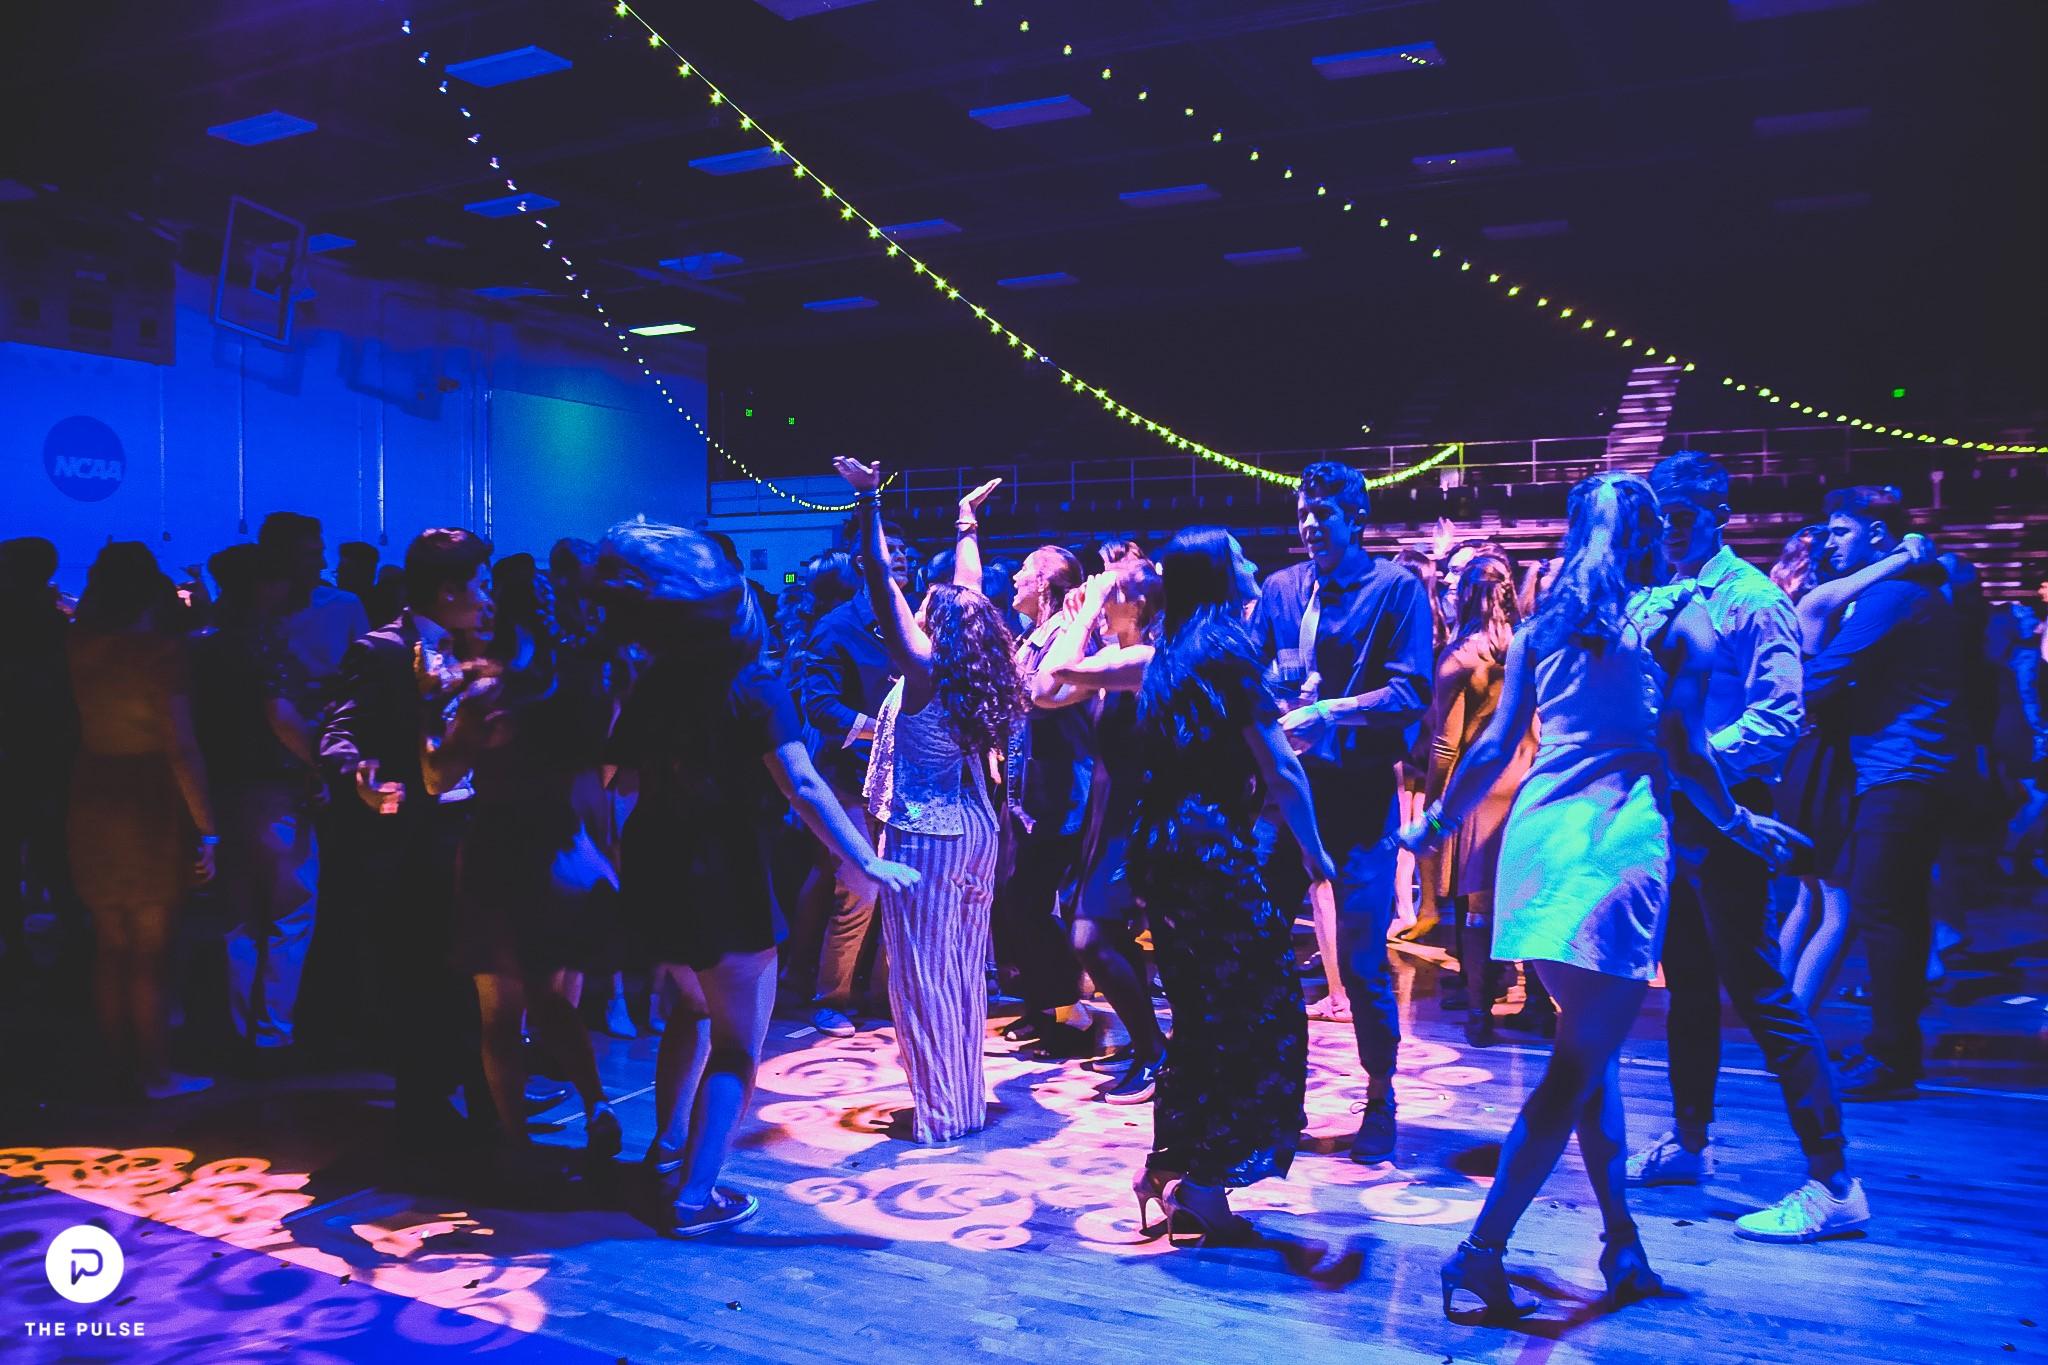 Students dancing at Homecoming 2019